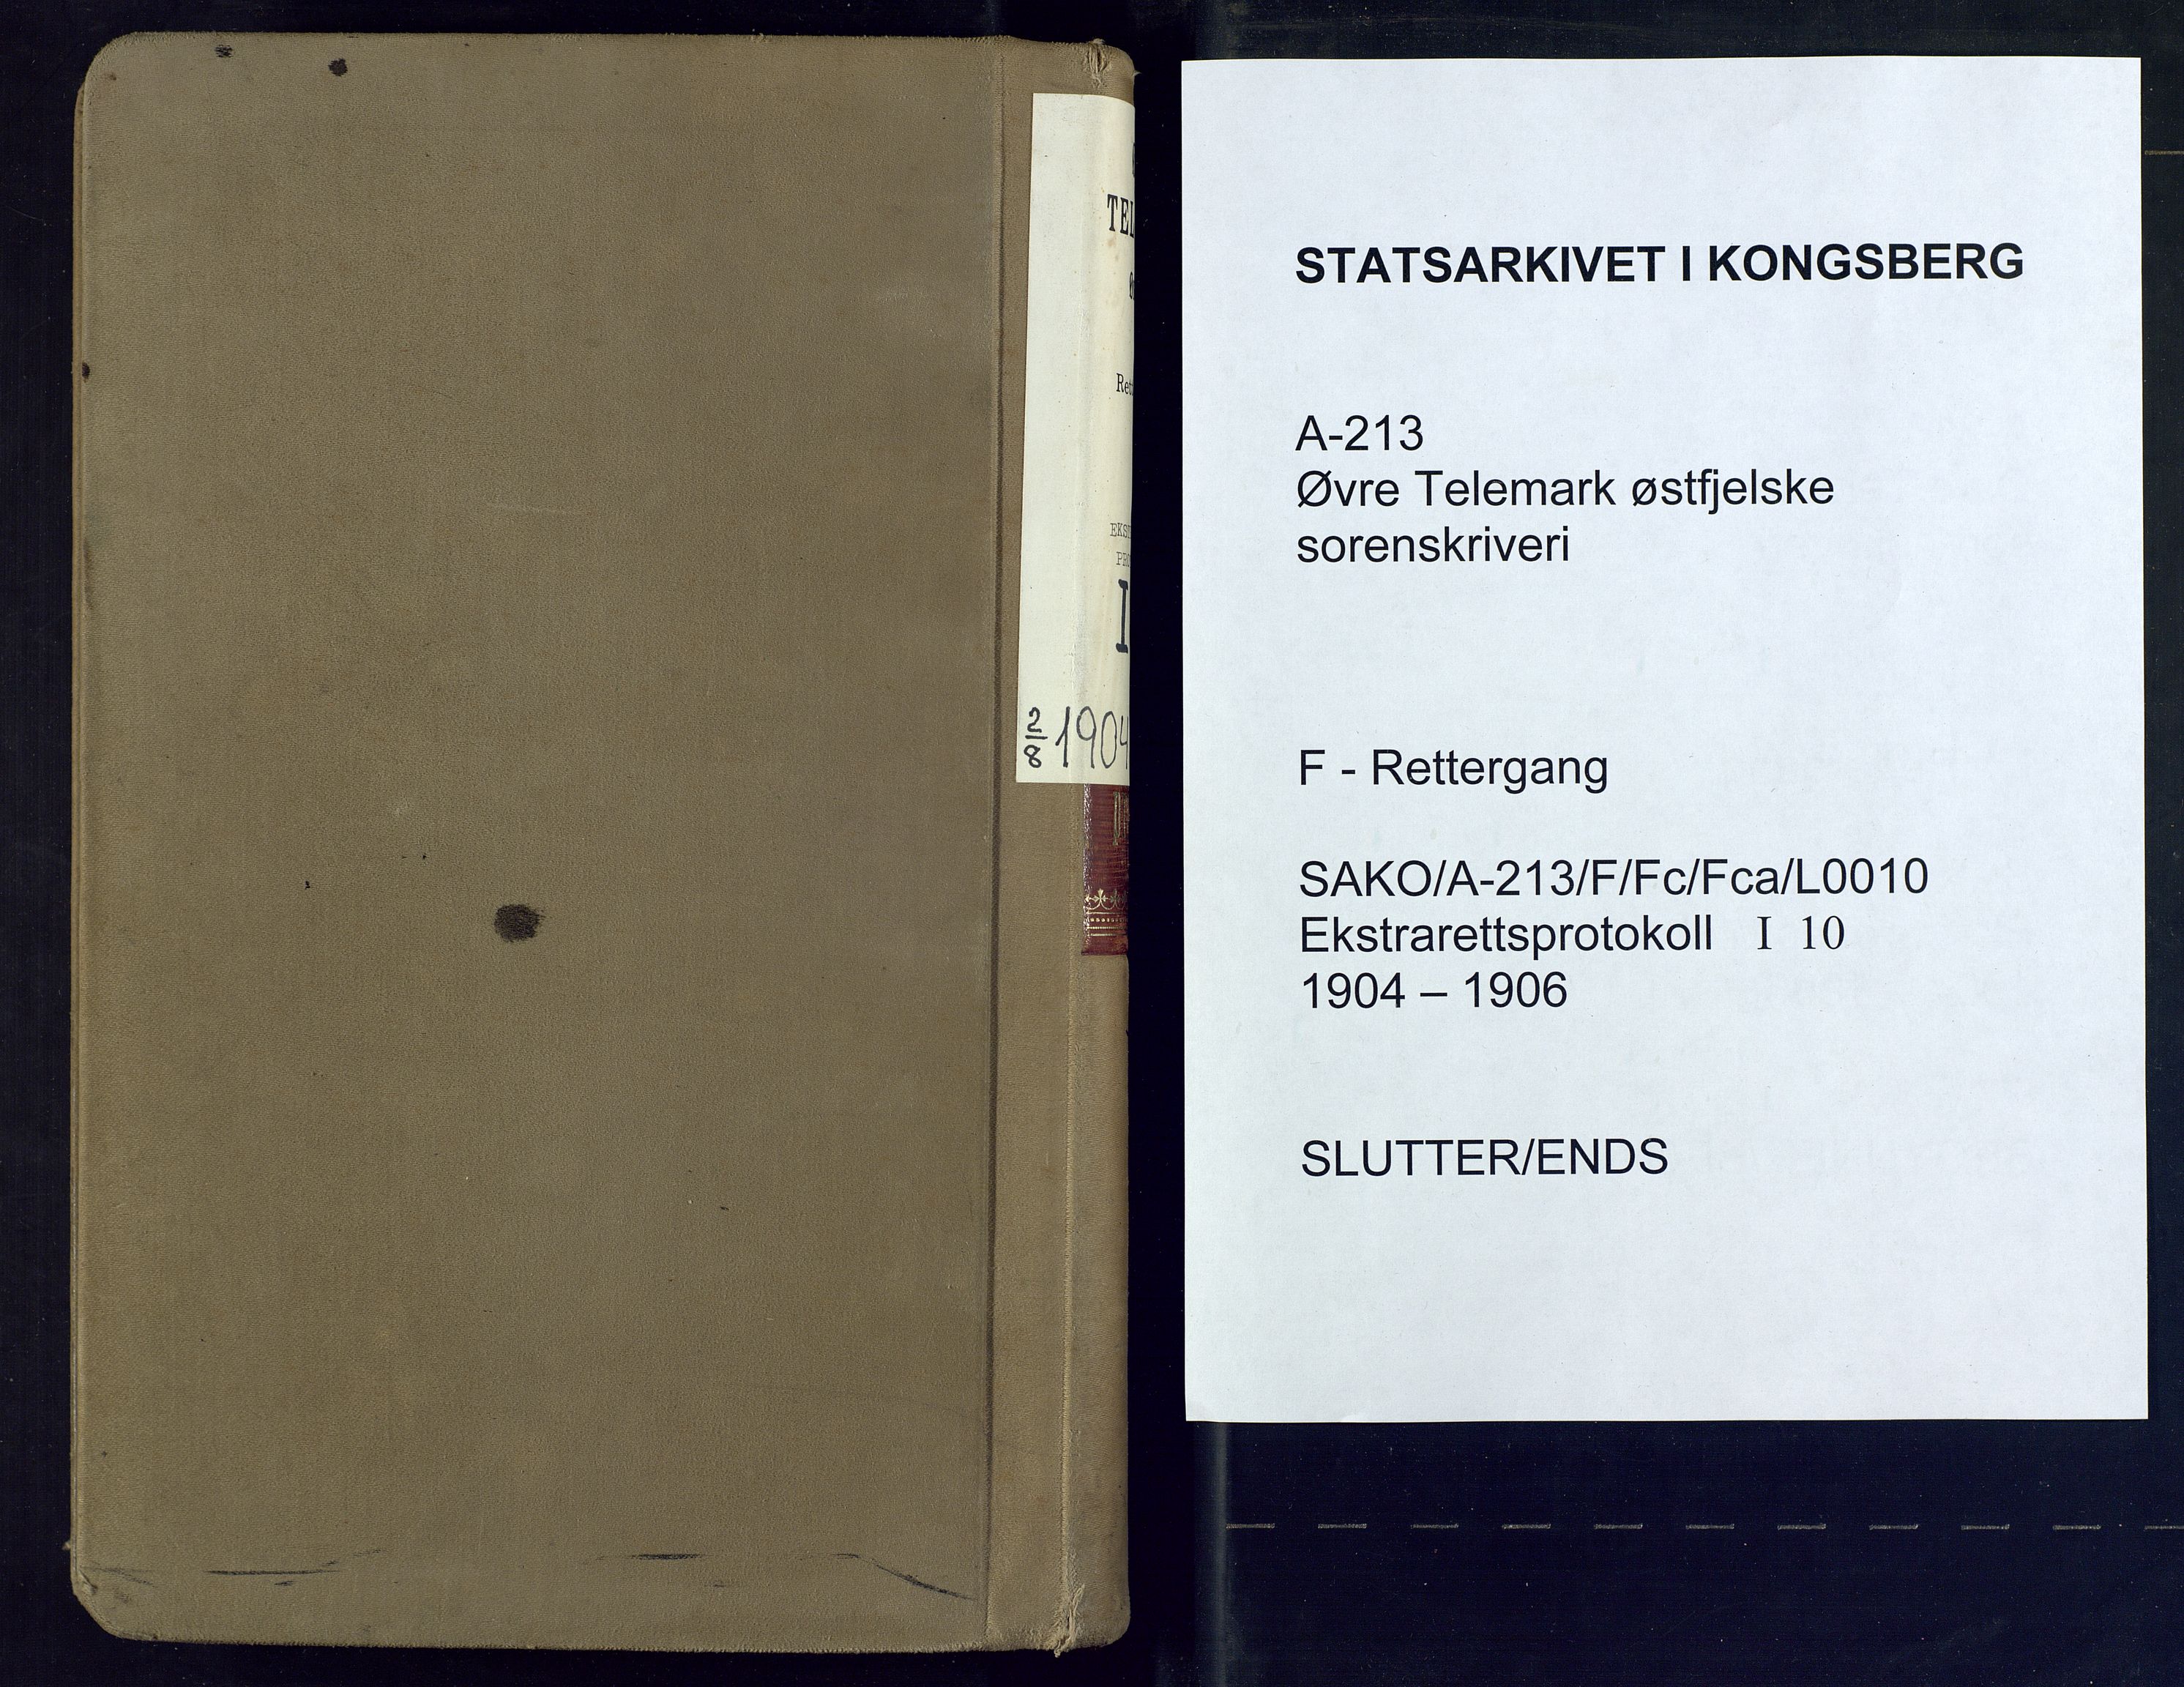 Øvre Telemark østfjelske sorenskriveri, SAKO/A-213/F/Fc/Fca/L0010: Ekstrarettsprotokoll, sivile saker, 1904-1906